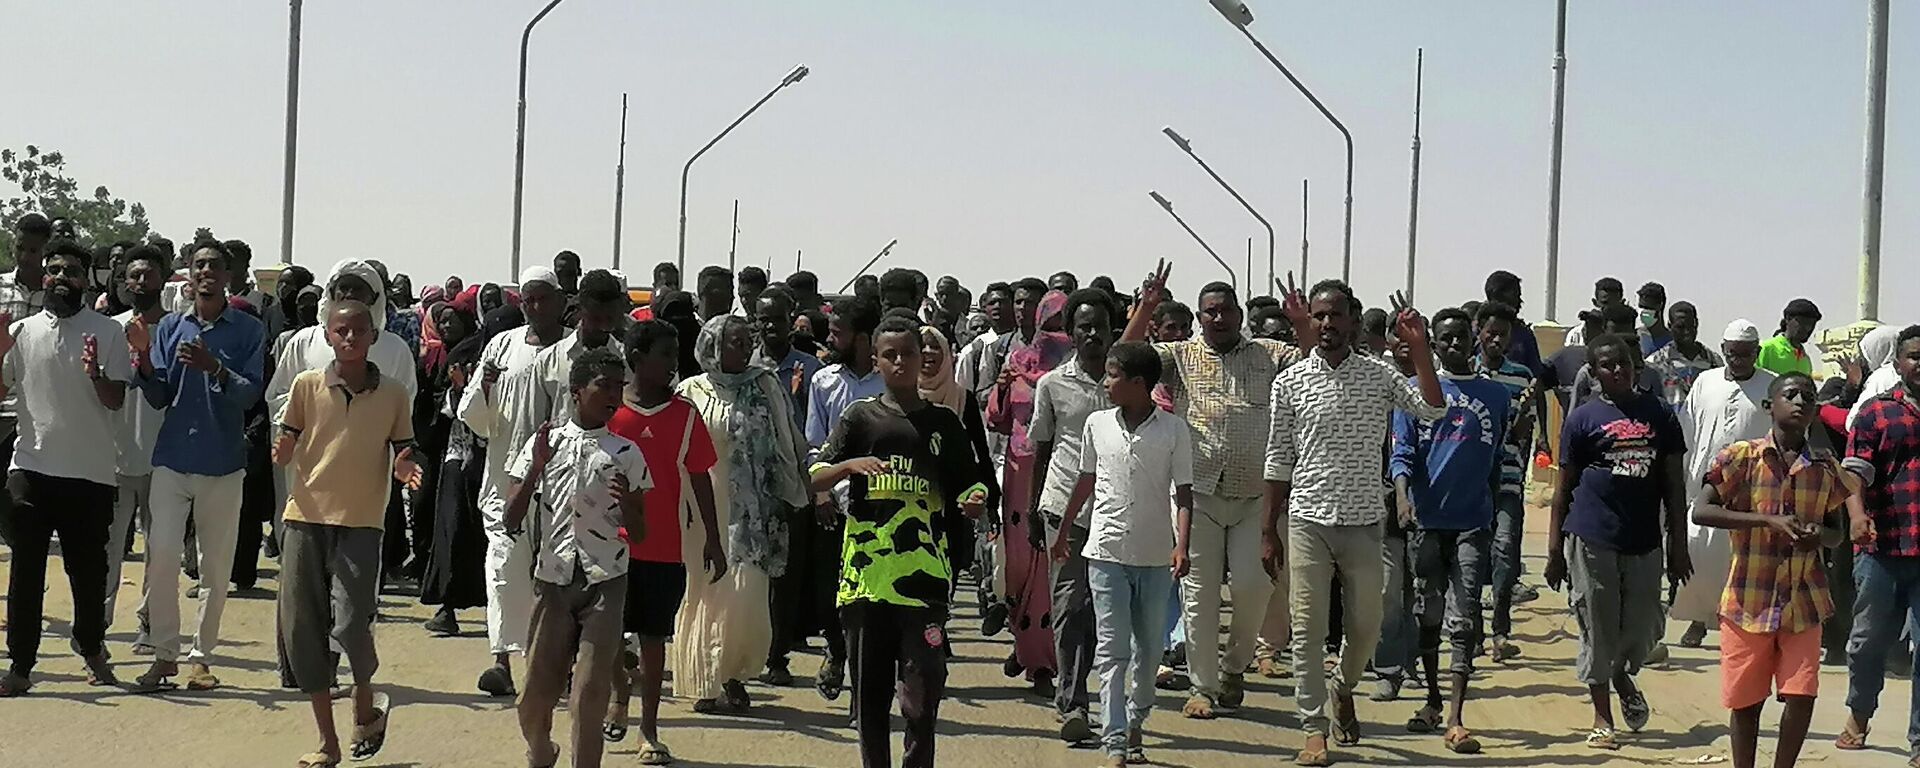 Las protestas en Sudán - Sputnik Mundo, 1920, 29.10.2021